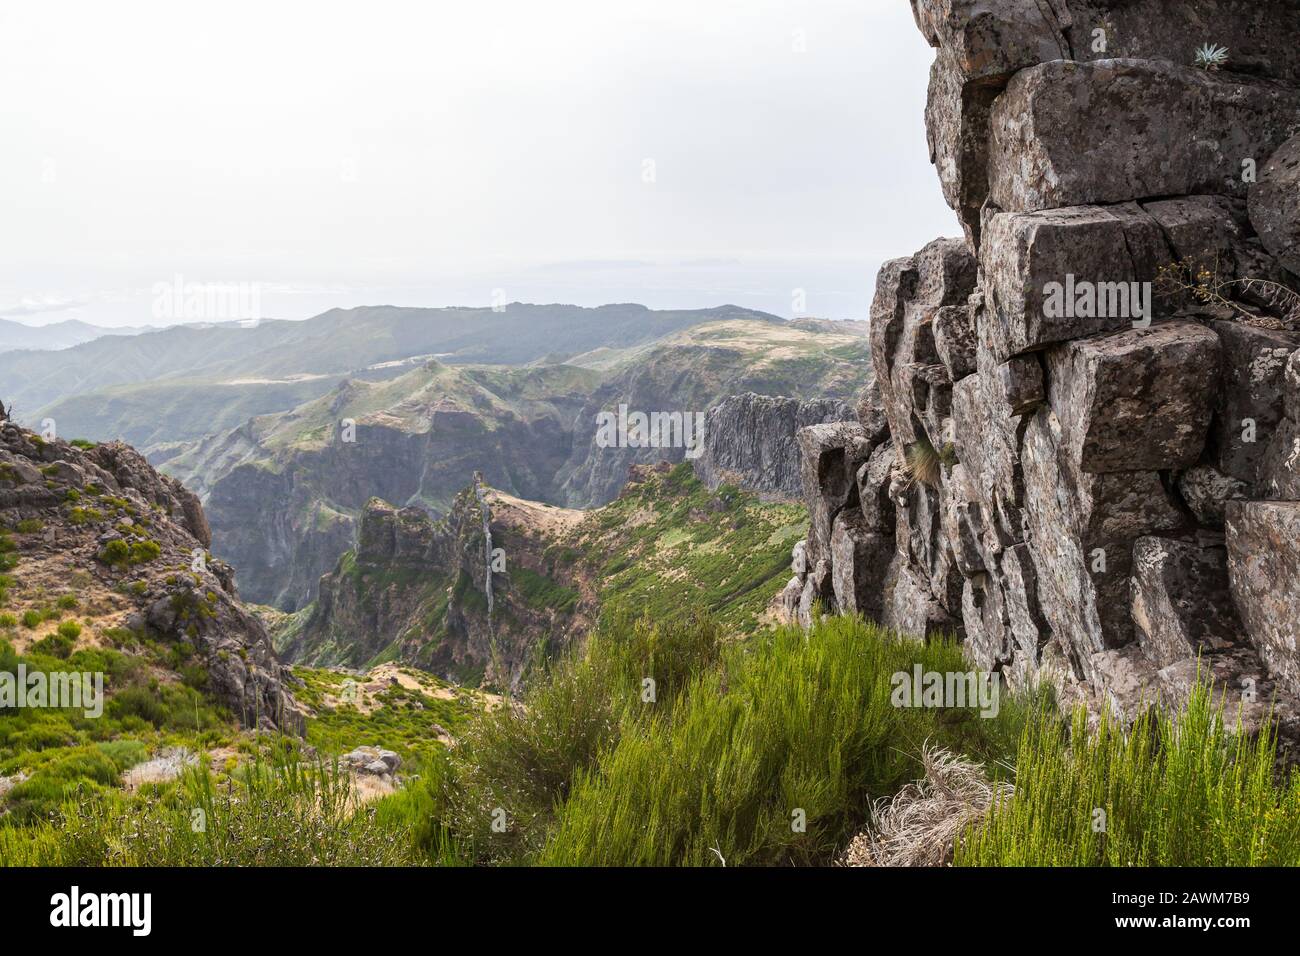 Pico do Arieiro. Paysage de montagne avec des roches sombres. Île De Madère, Portugal Banque D'Images